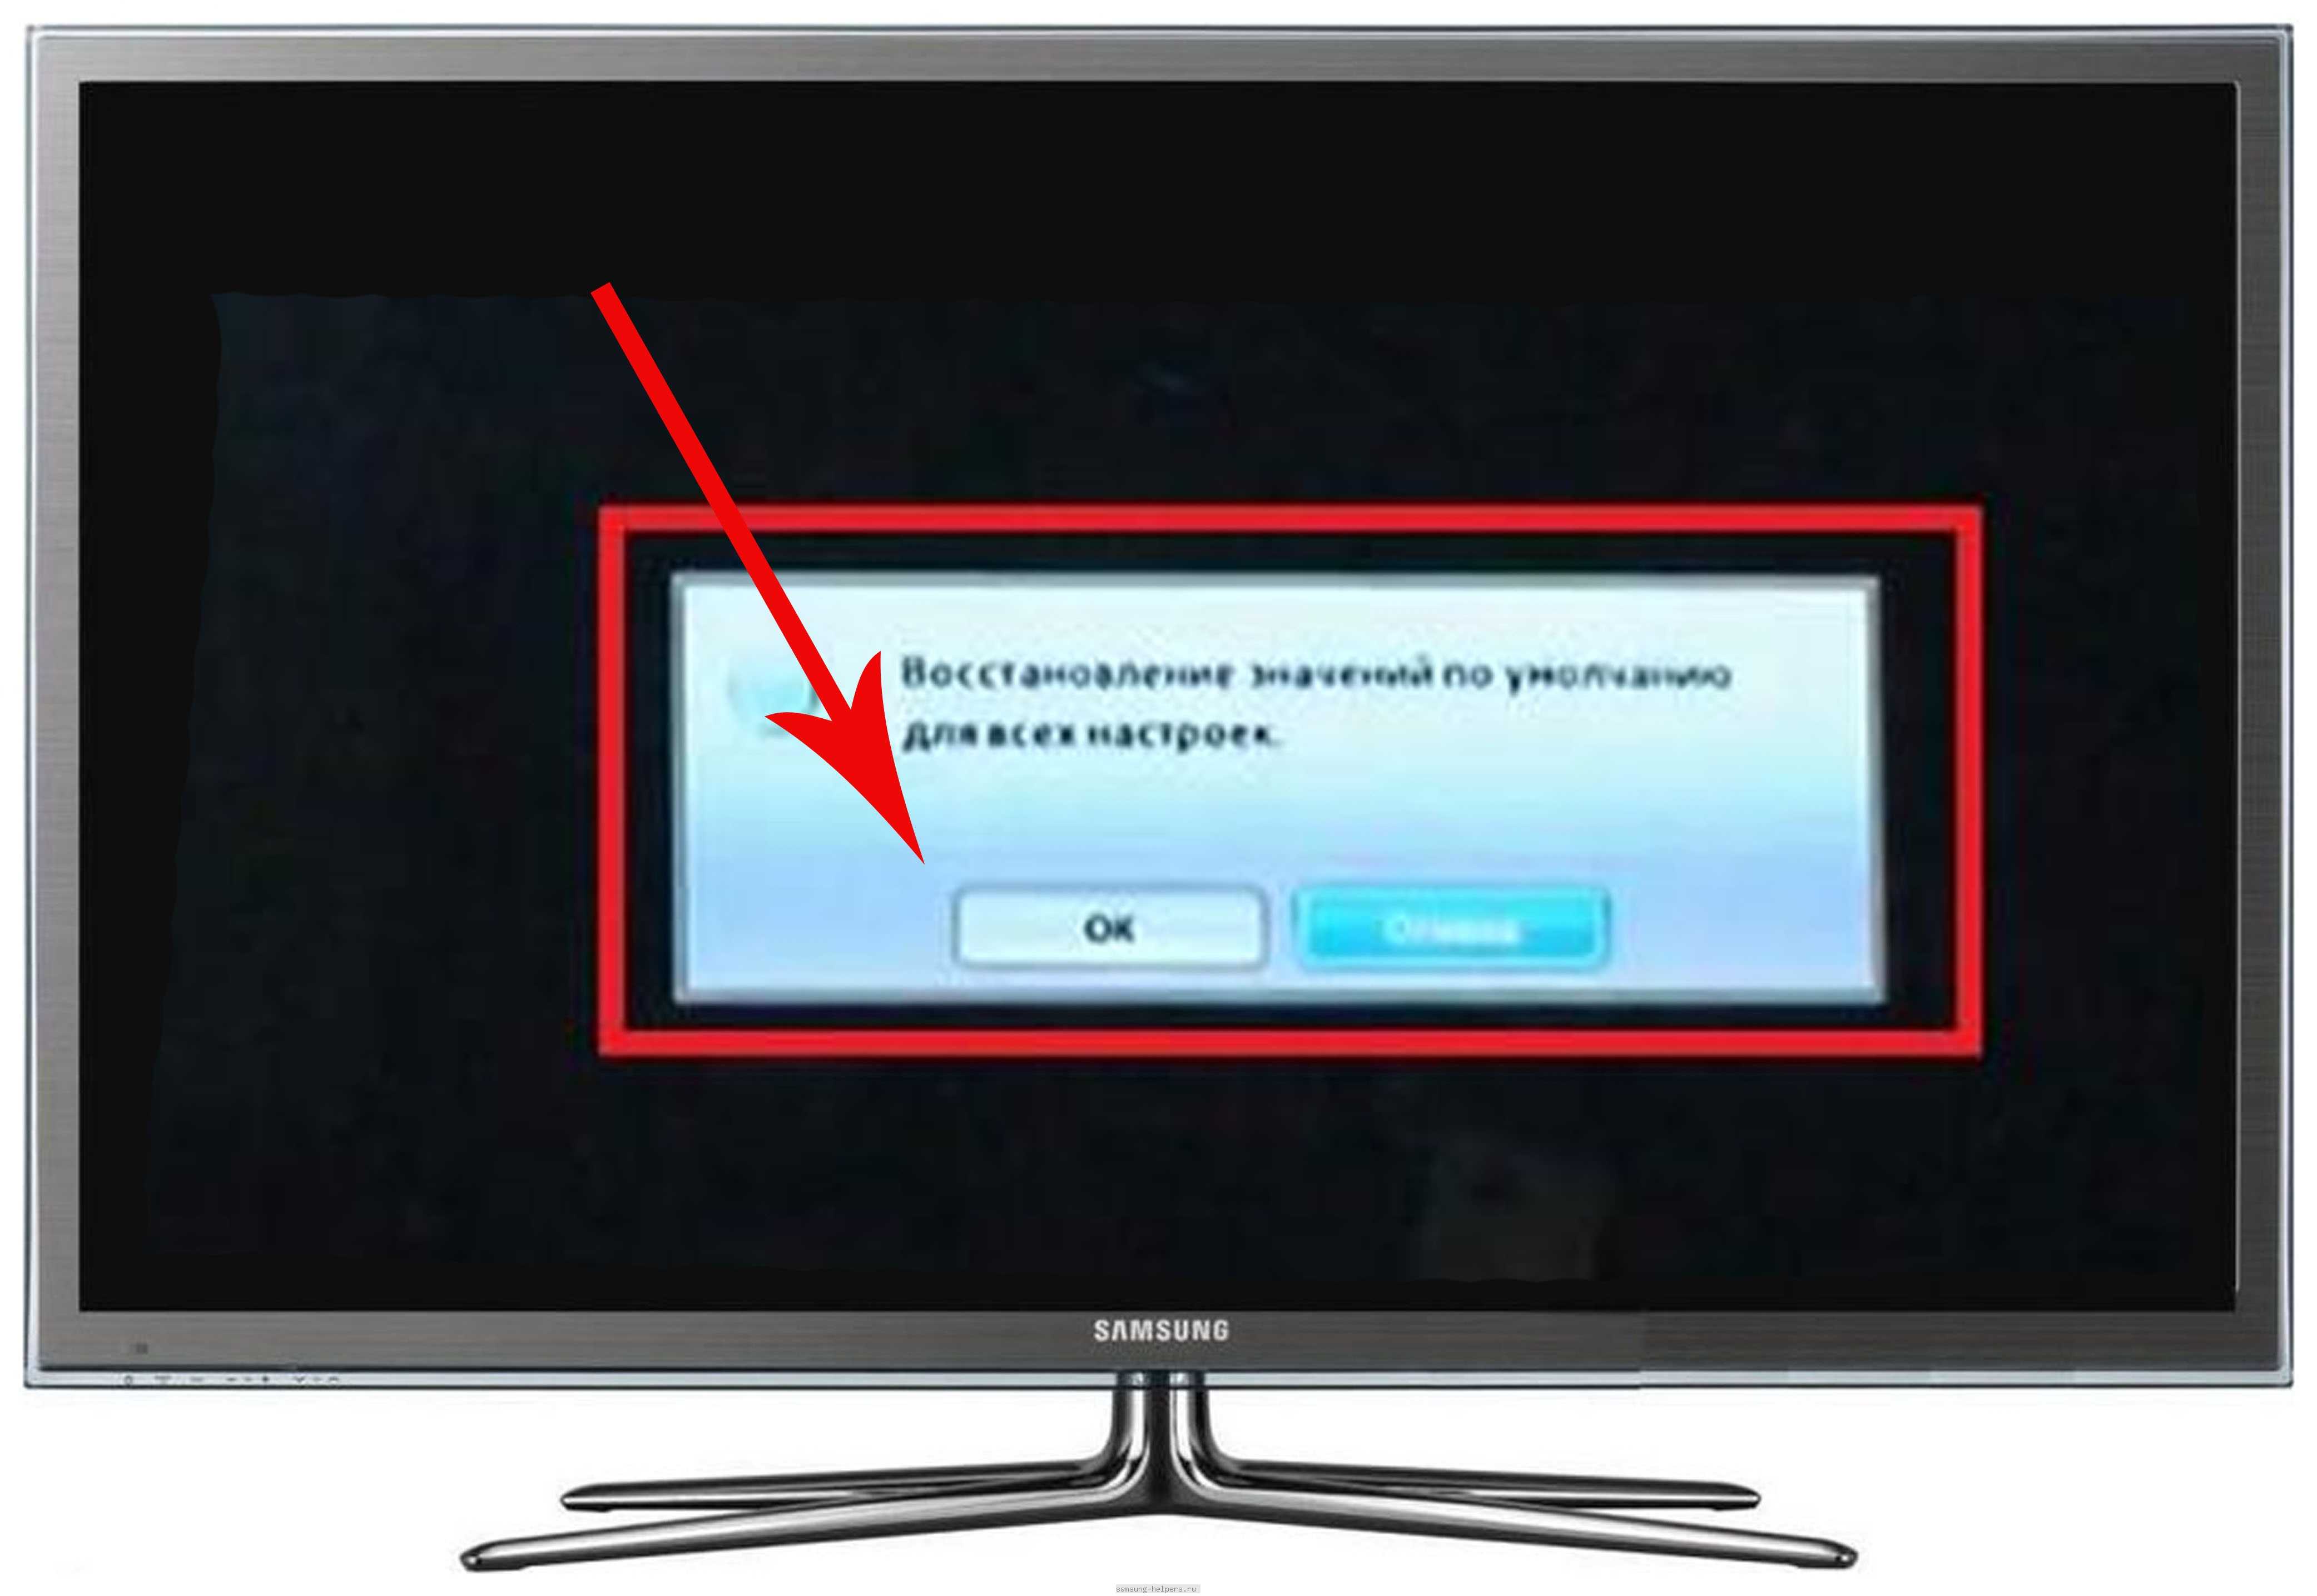 Телевизор не включается: почему мигает индикатор, щелкает или моргает при включении светодиод? что делать?